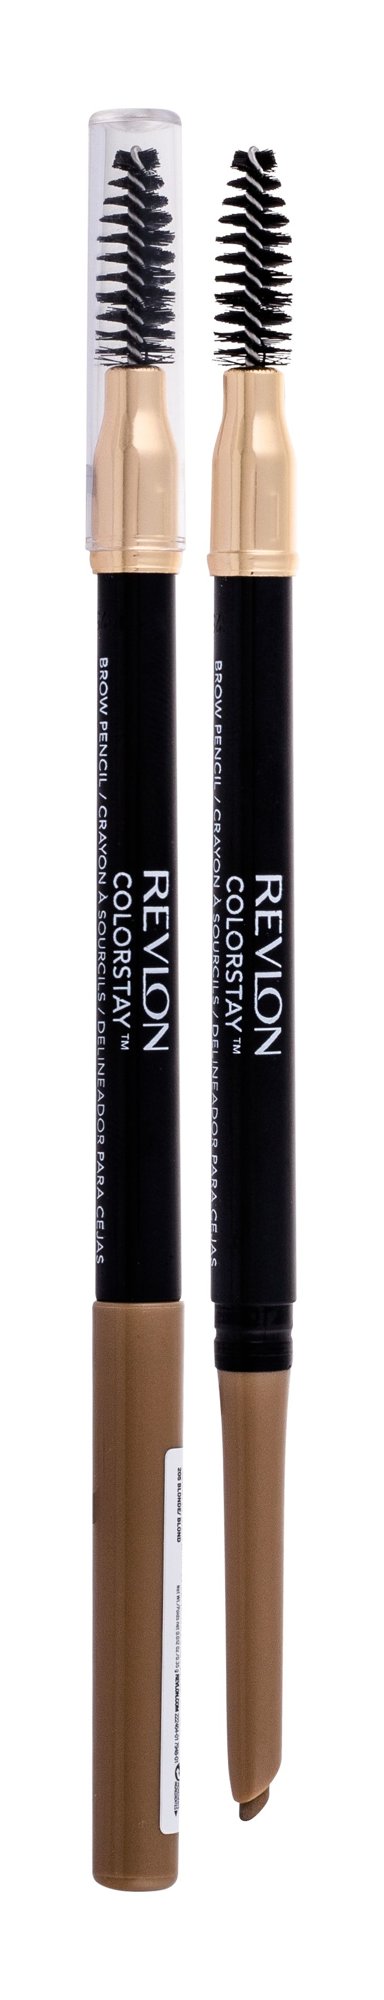 Revlon Colorstay Brow Pencil antakių pieštukas